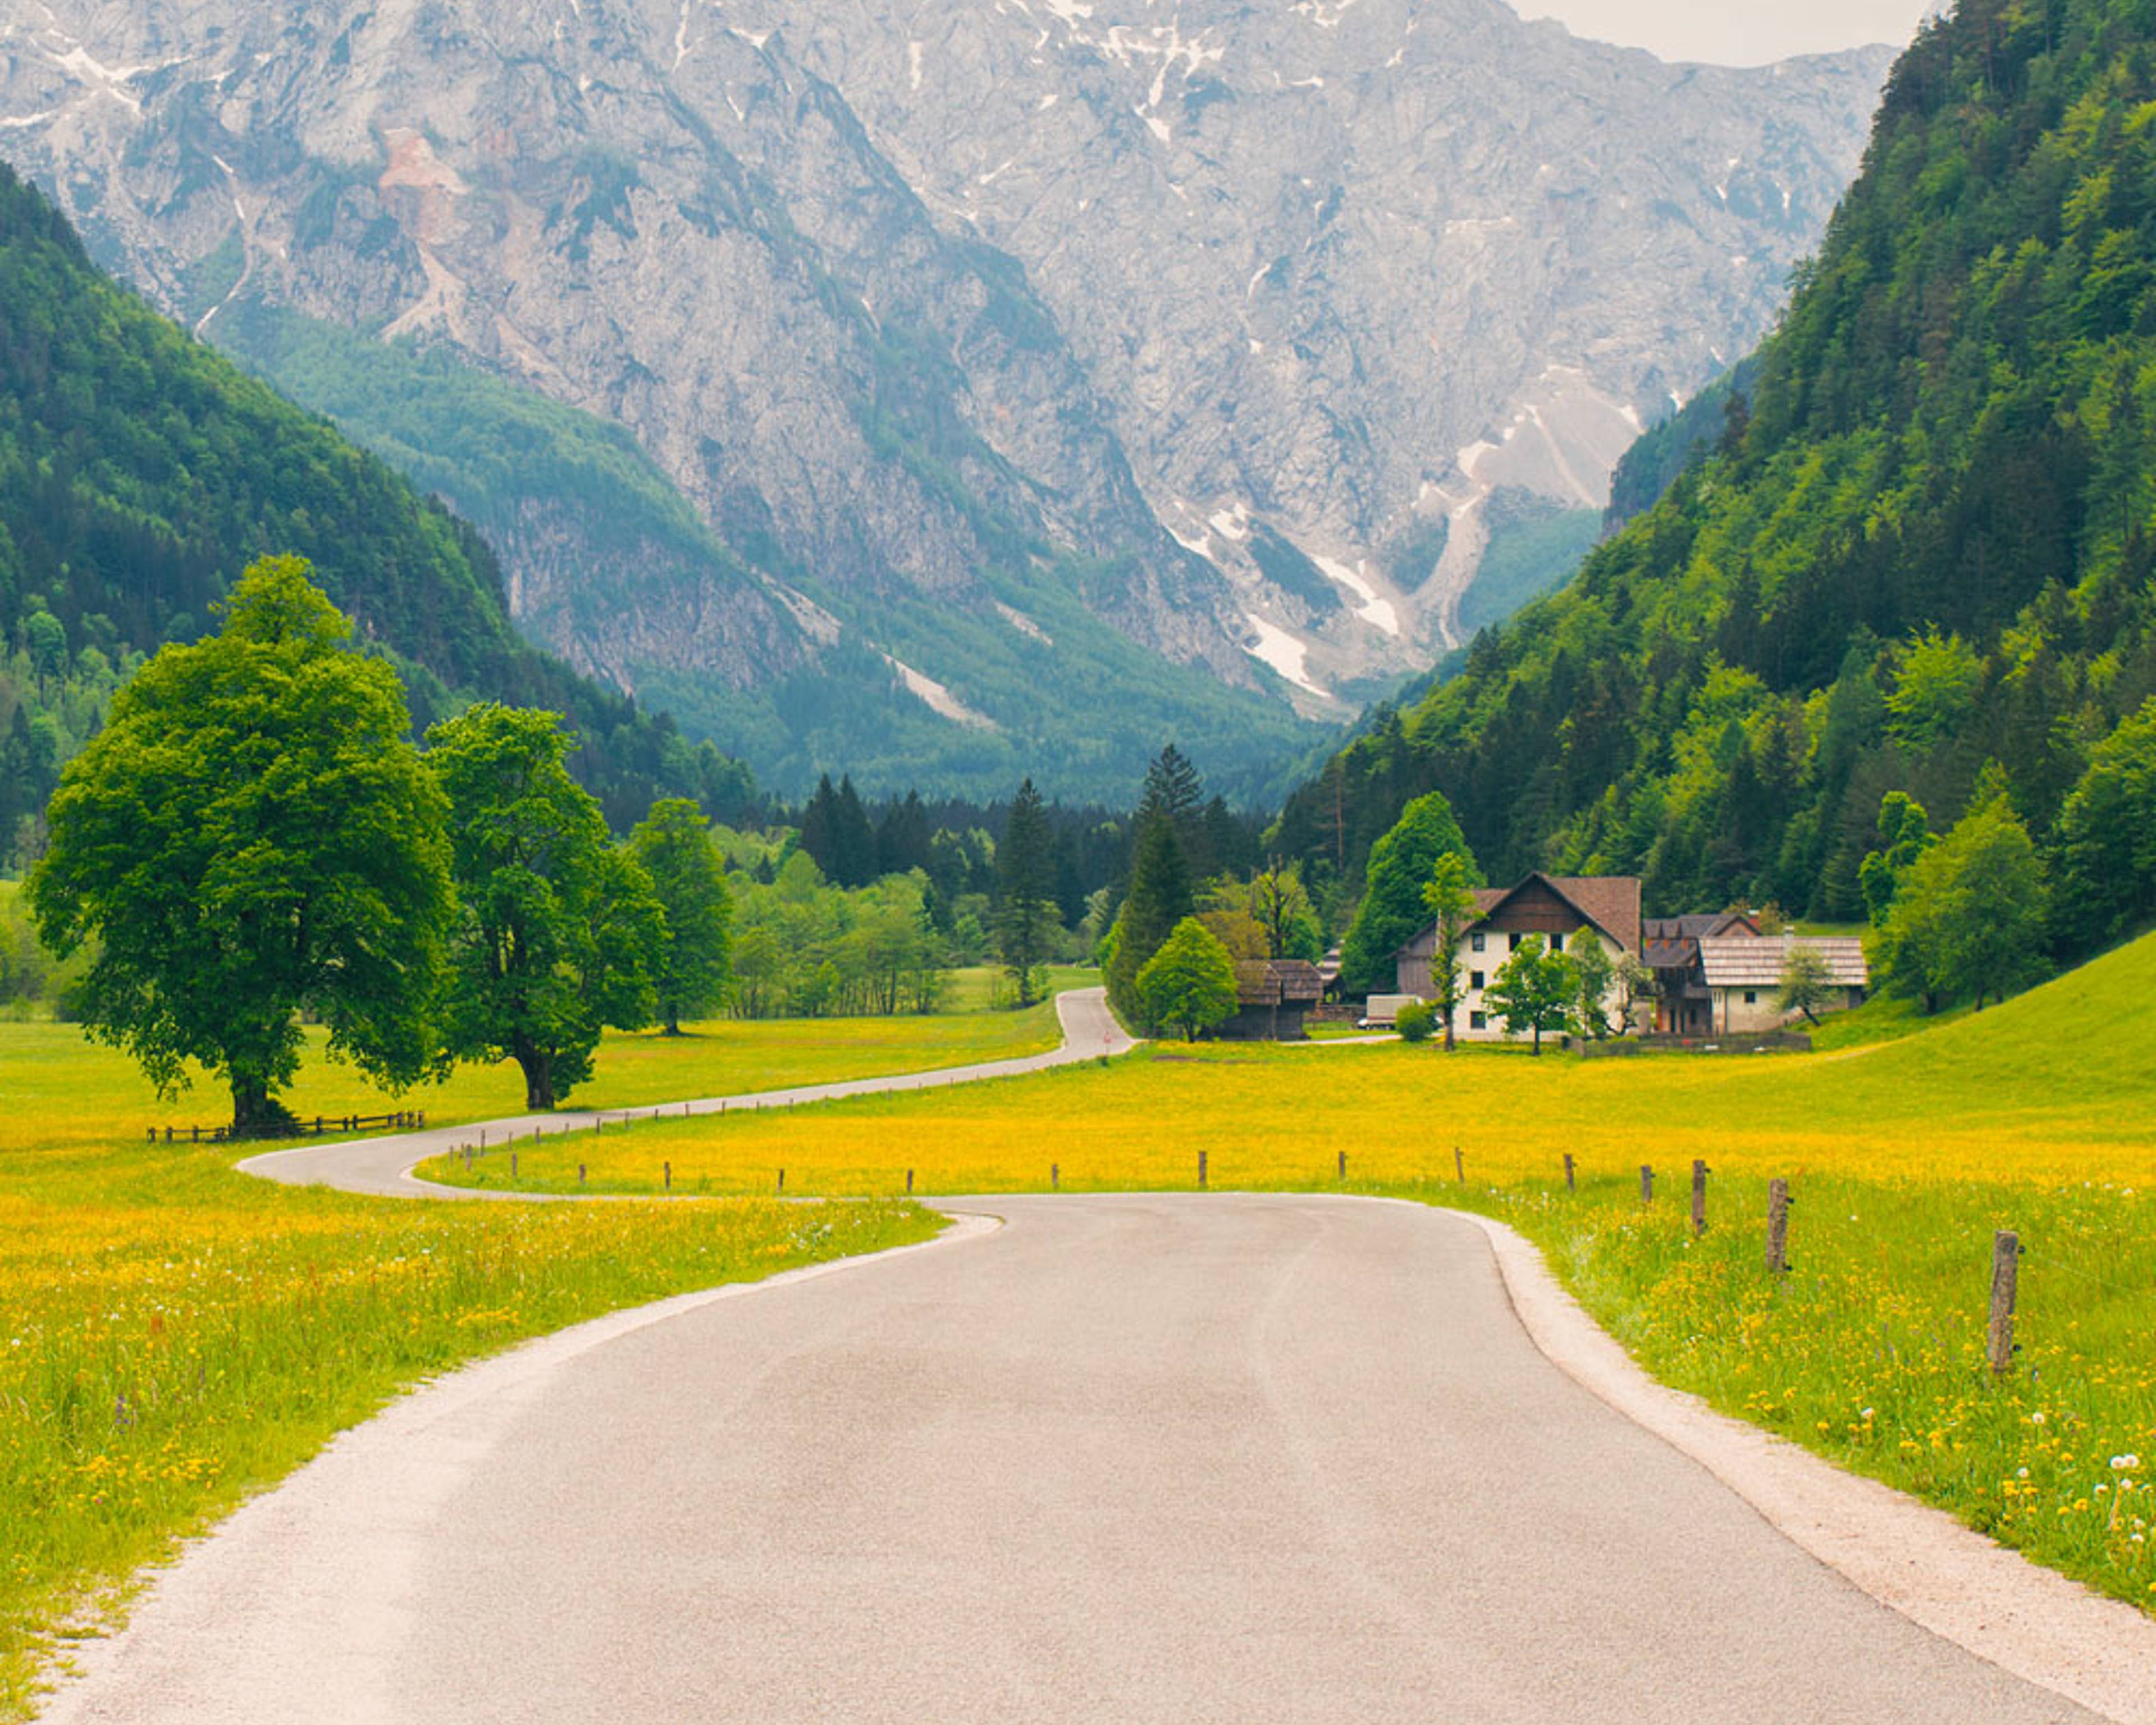 Votre voyage en autotour en Slovénie 100% sur mesure